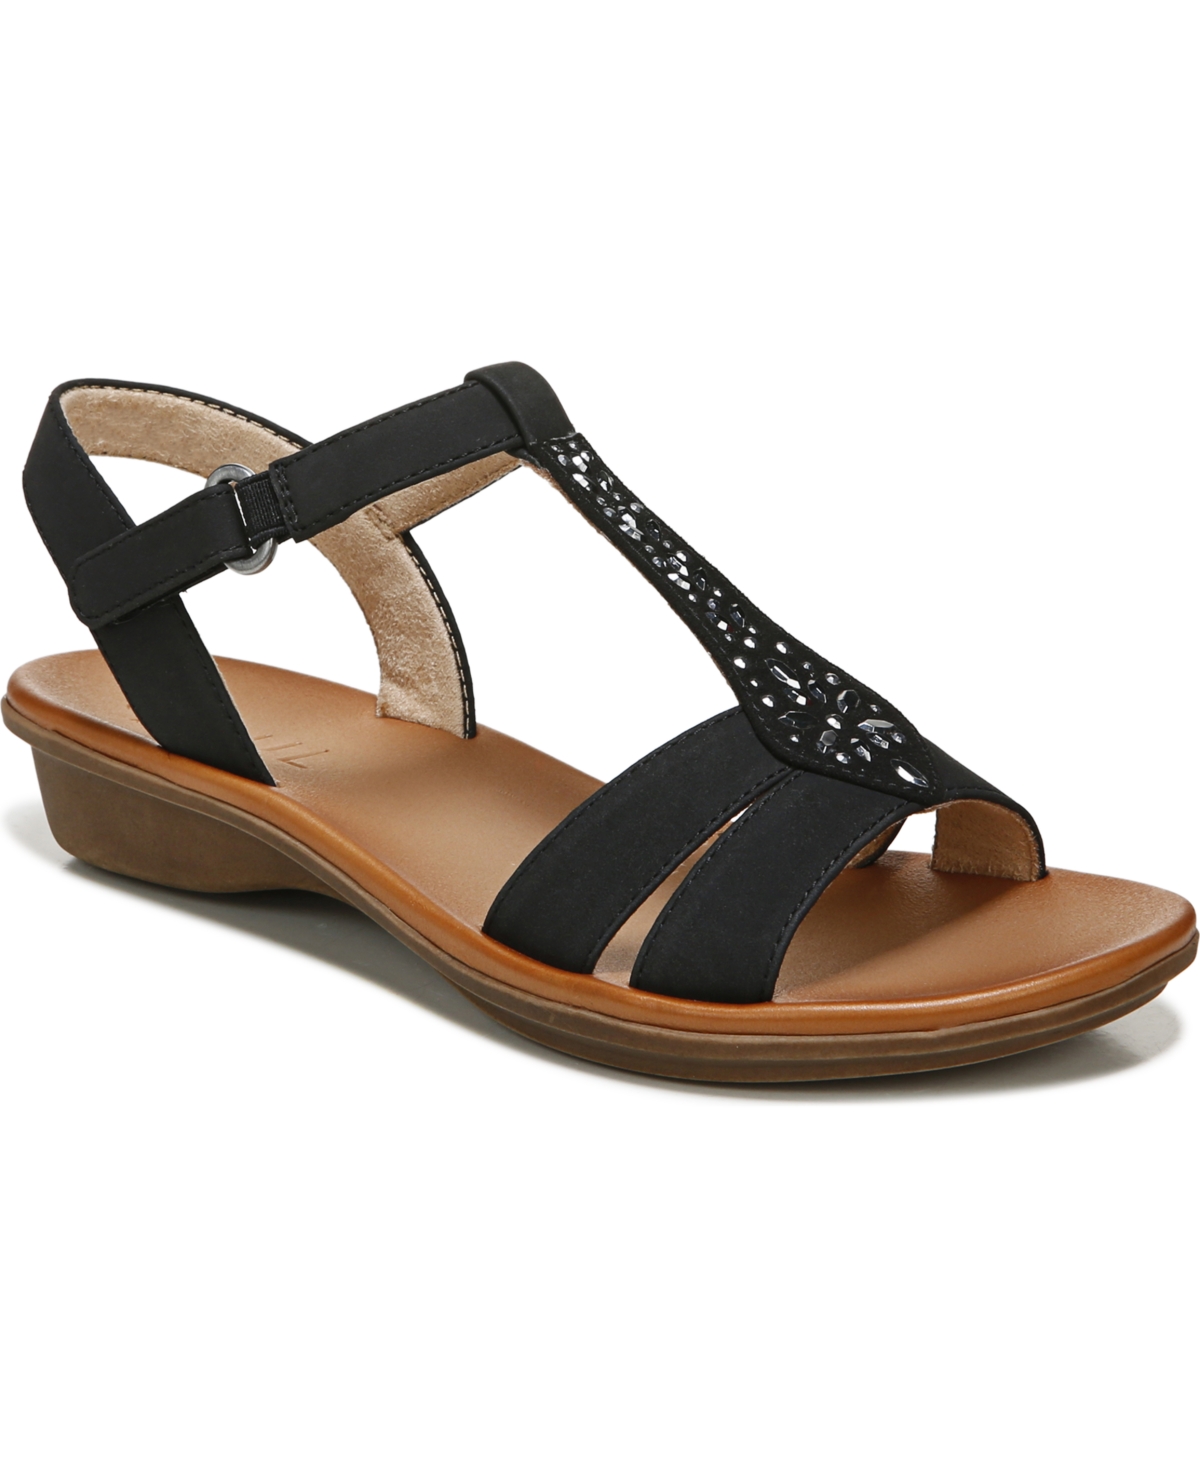 Summer Ankle Strap Sandals - Mauve Faux Nubuck/Microfiber